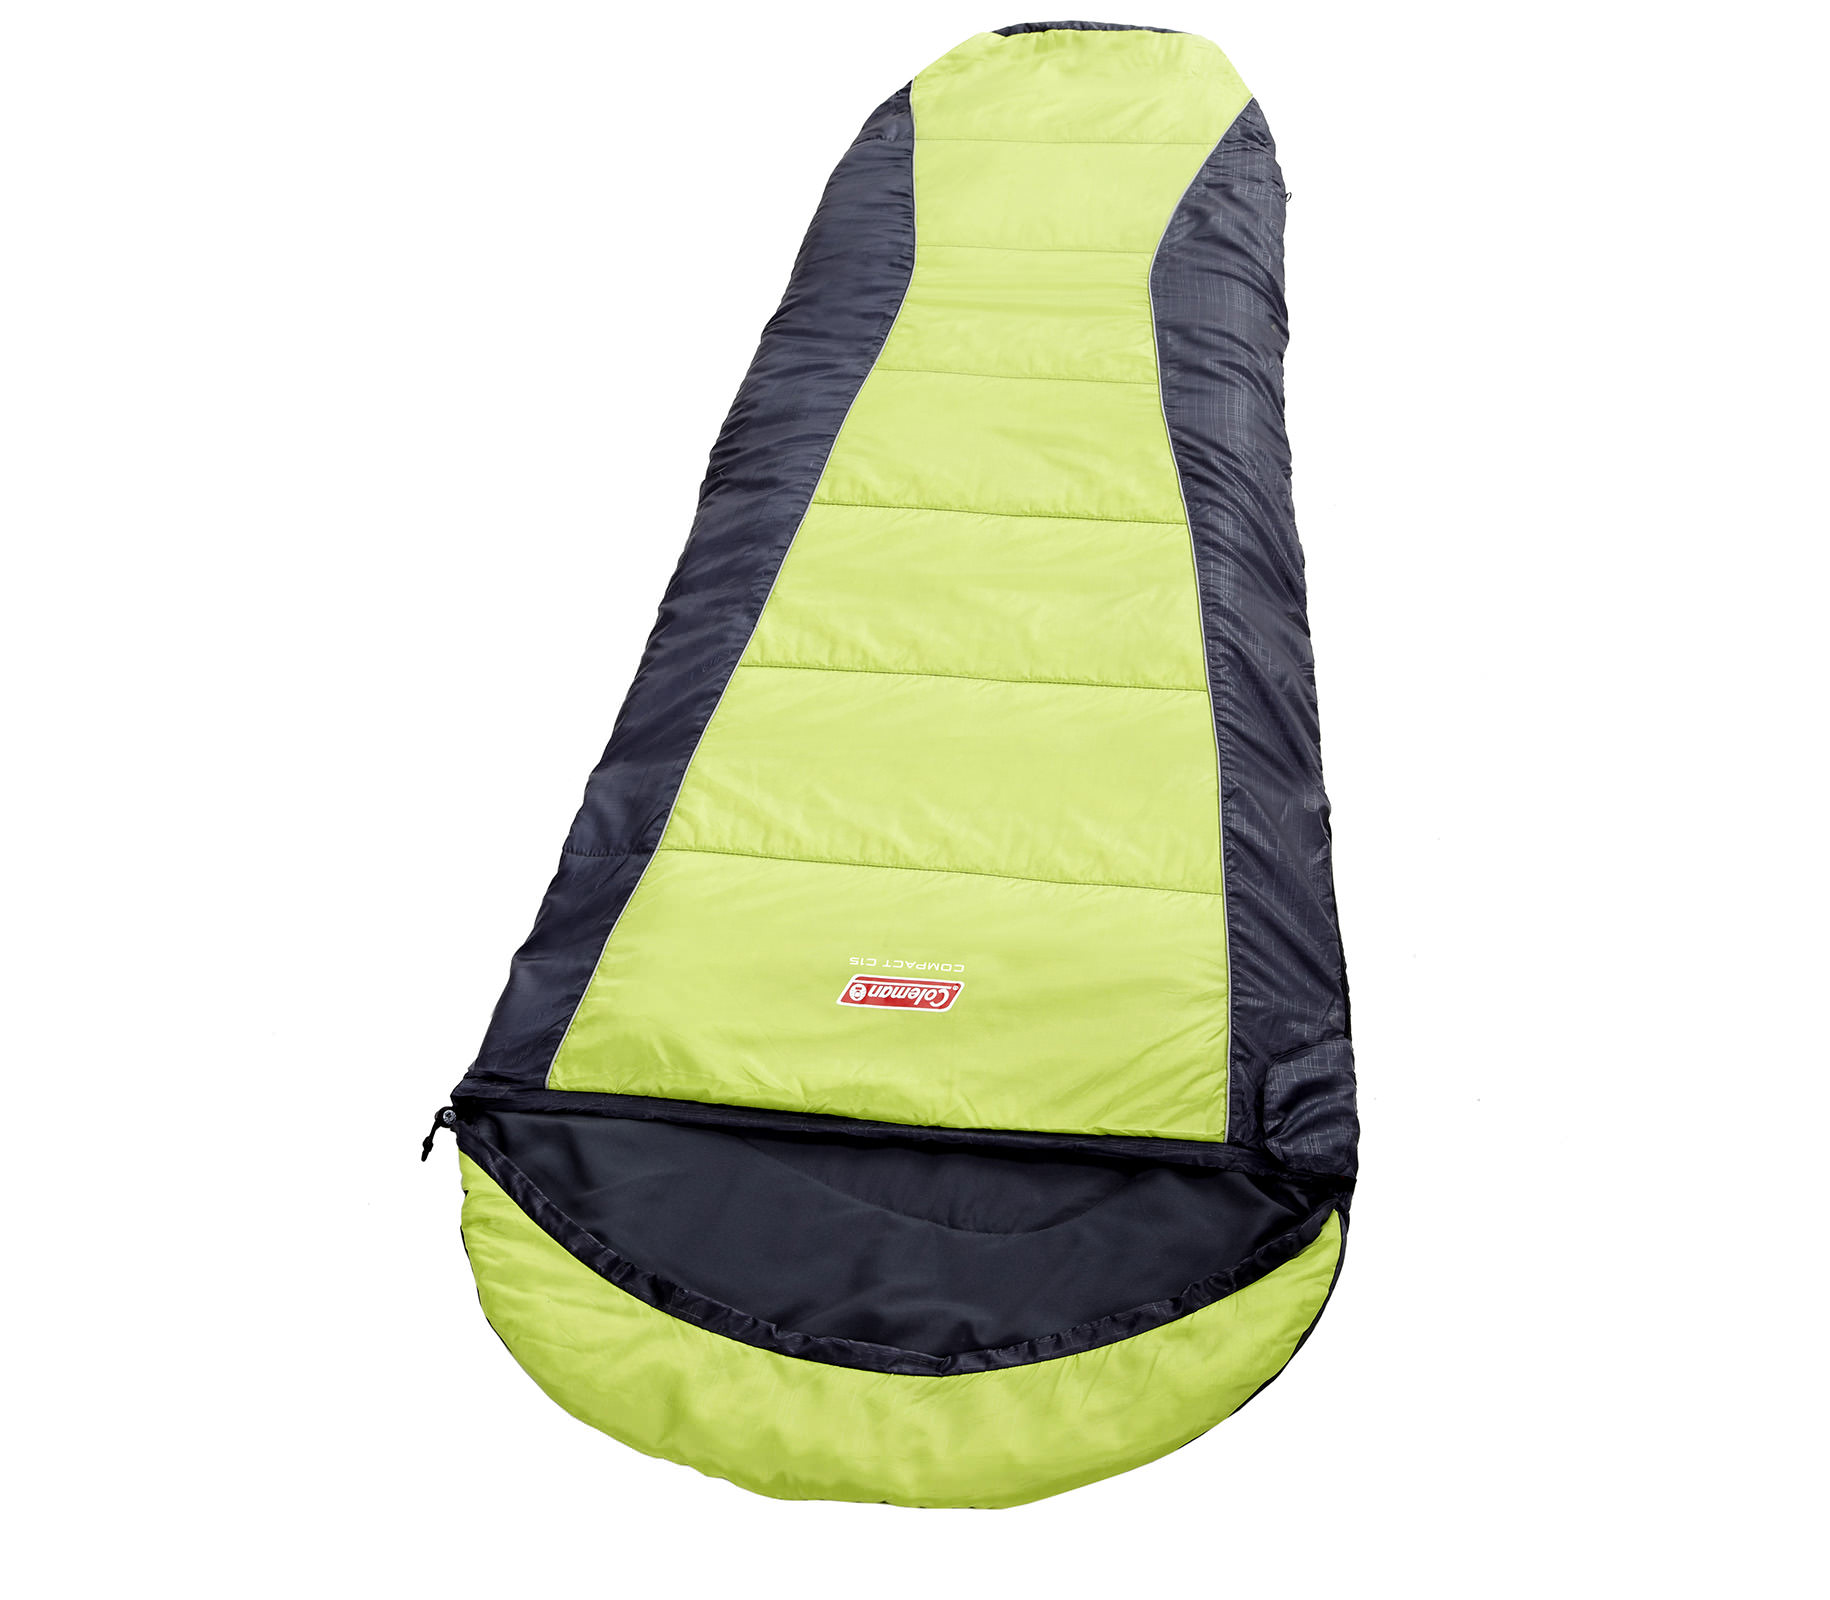 tui-ngu-coleman-c15-sleeping-bag-backpacking-2000015229-7404-wetrek_vn